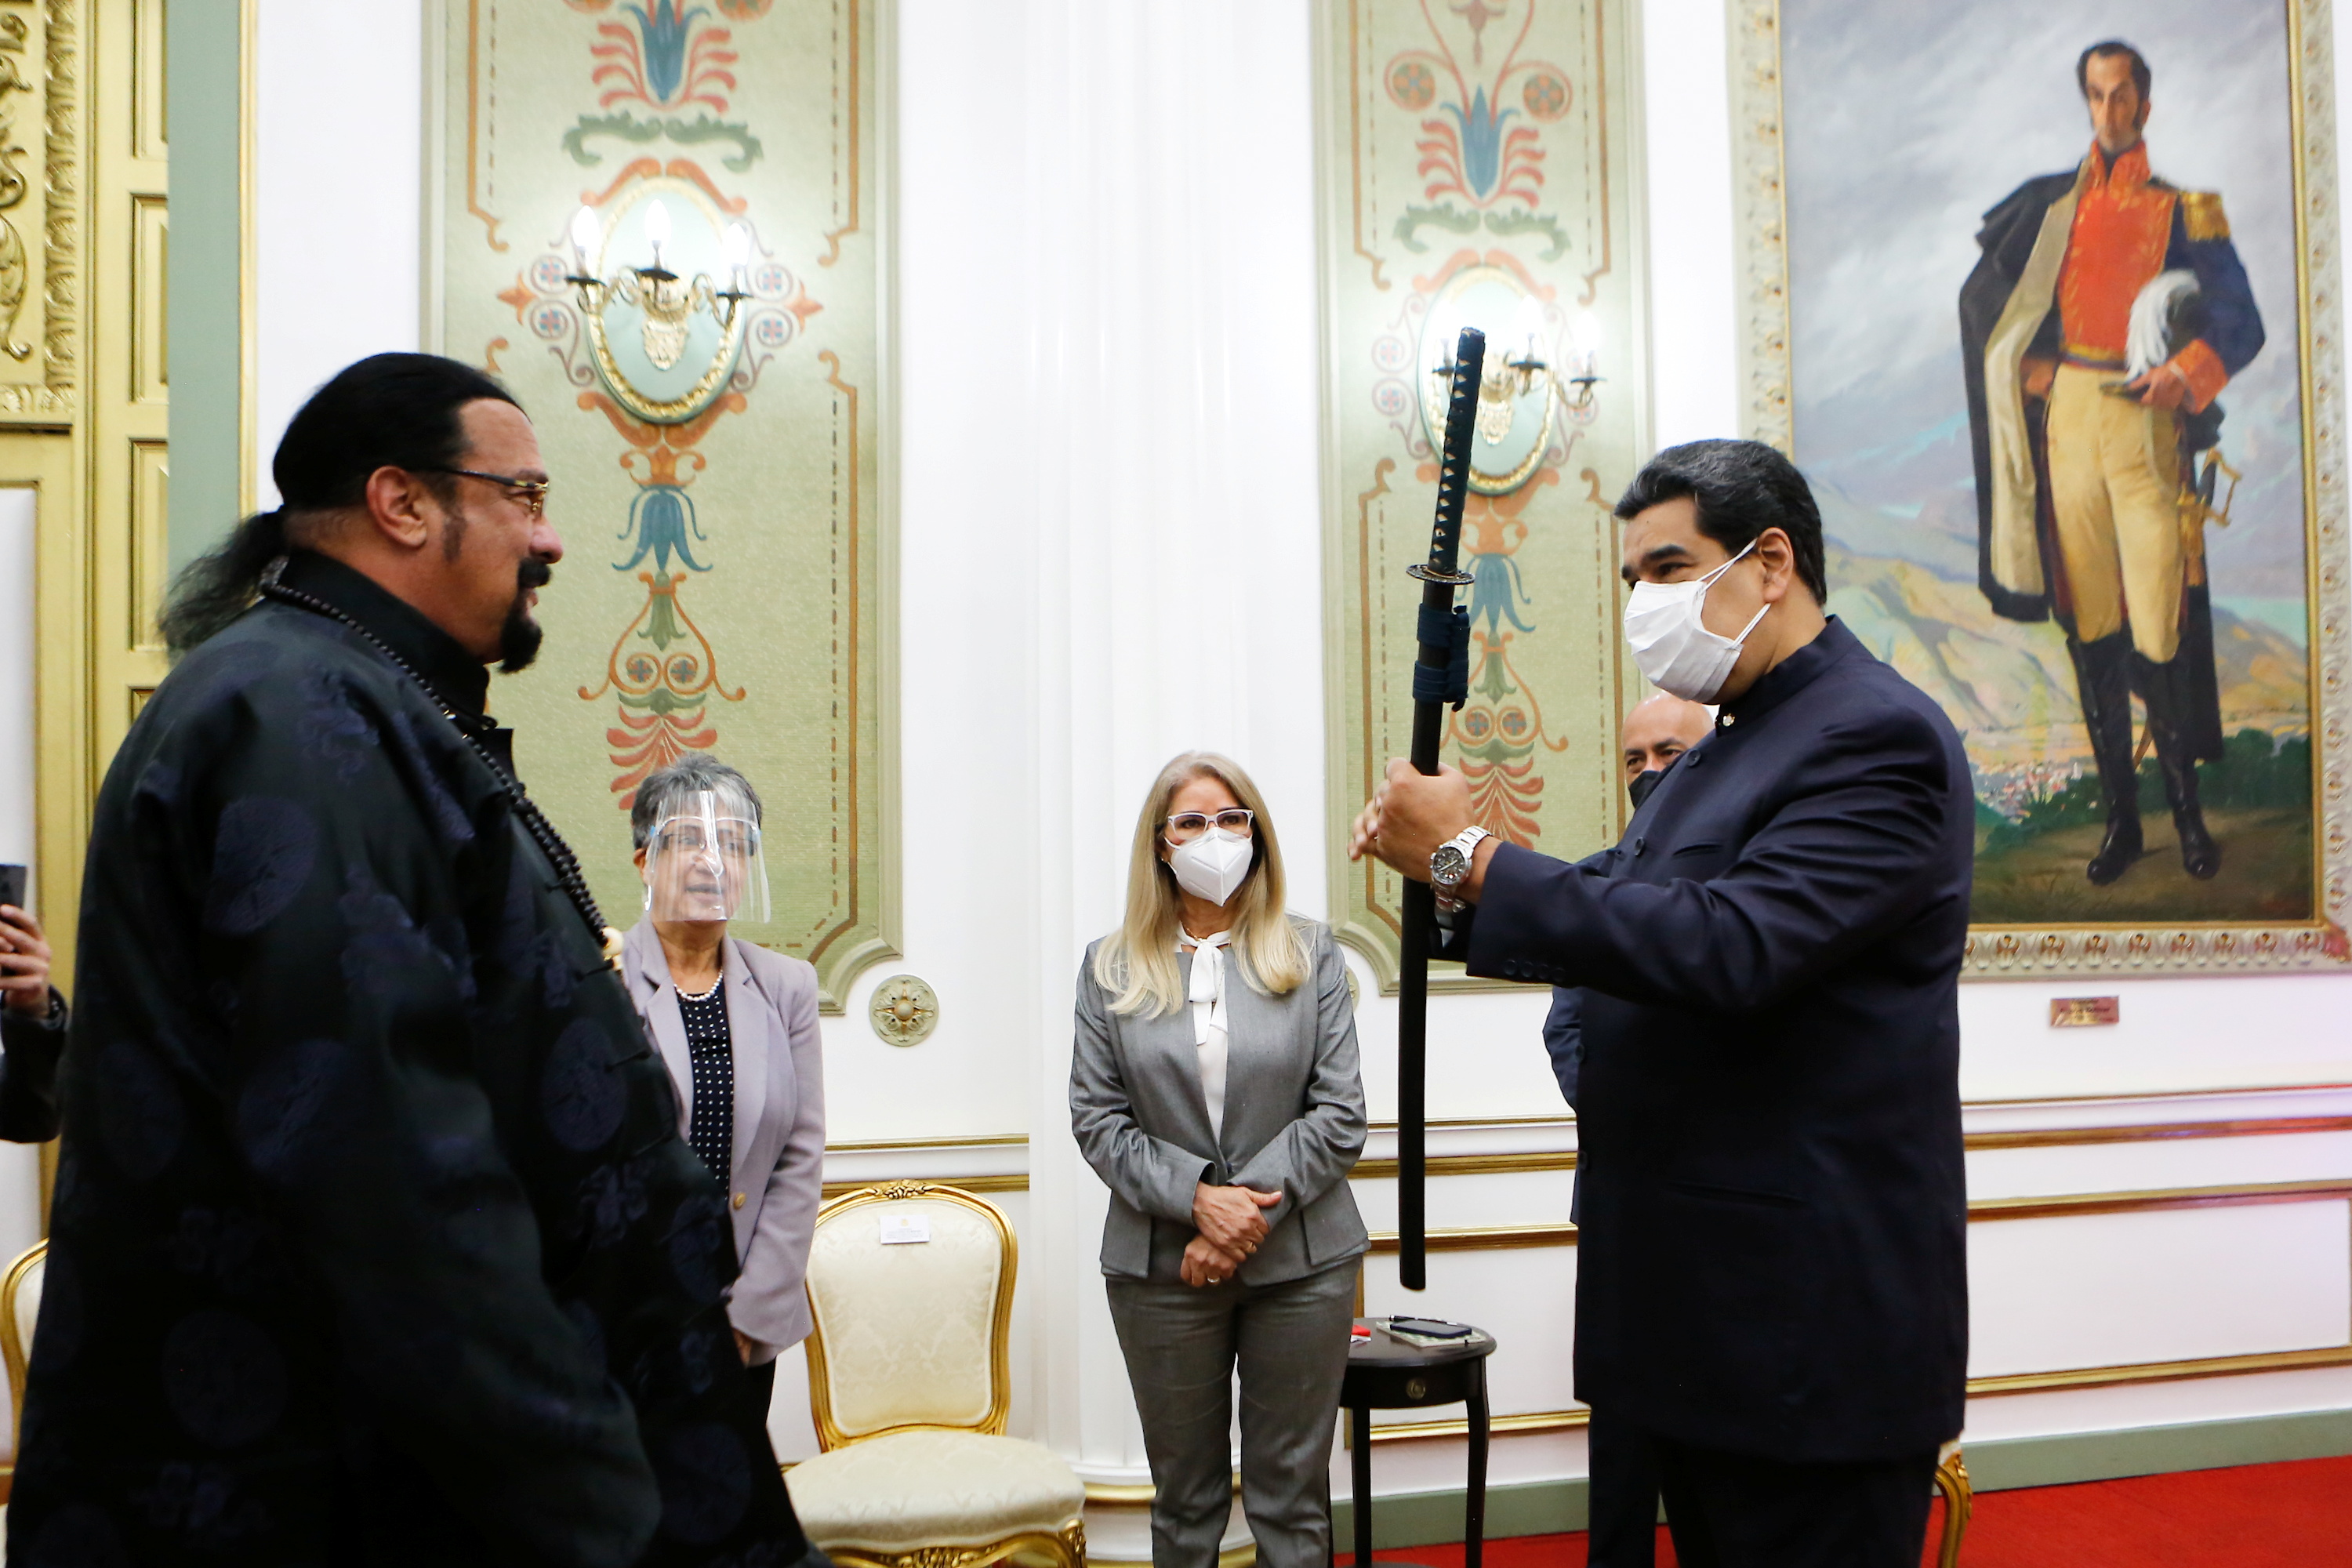 Venezuela's President Nicolas Maduro receives a samurai sword as a gift from actor Steven Seagal, in Caracas